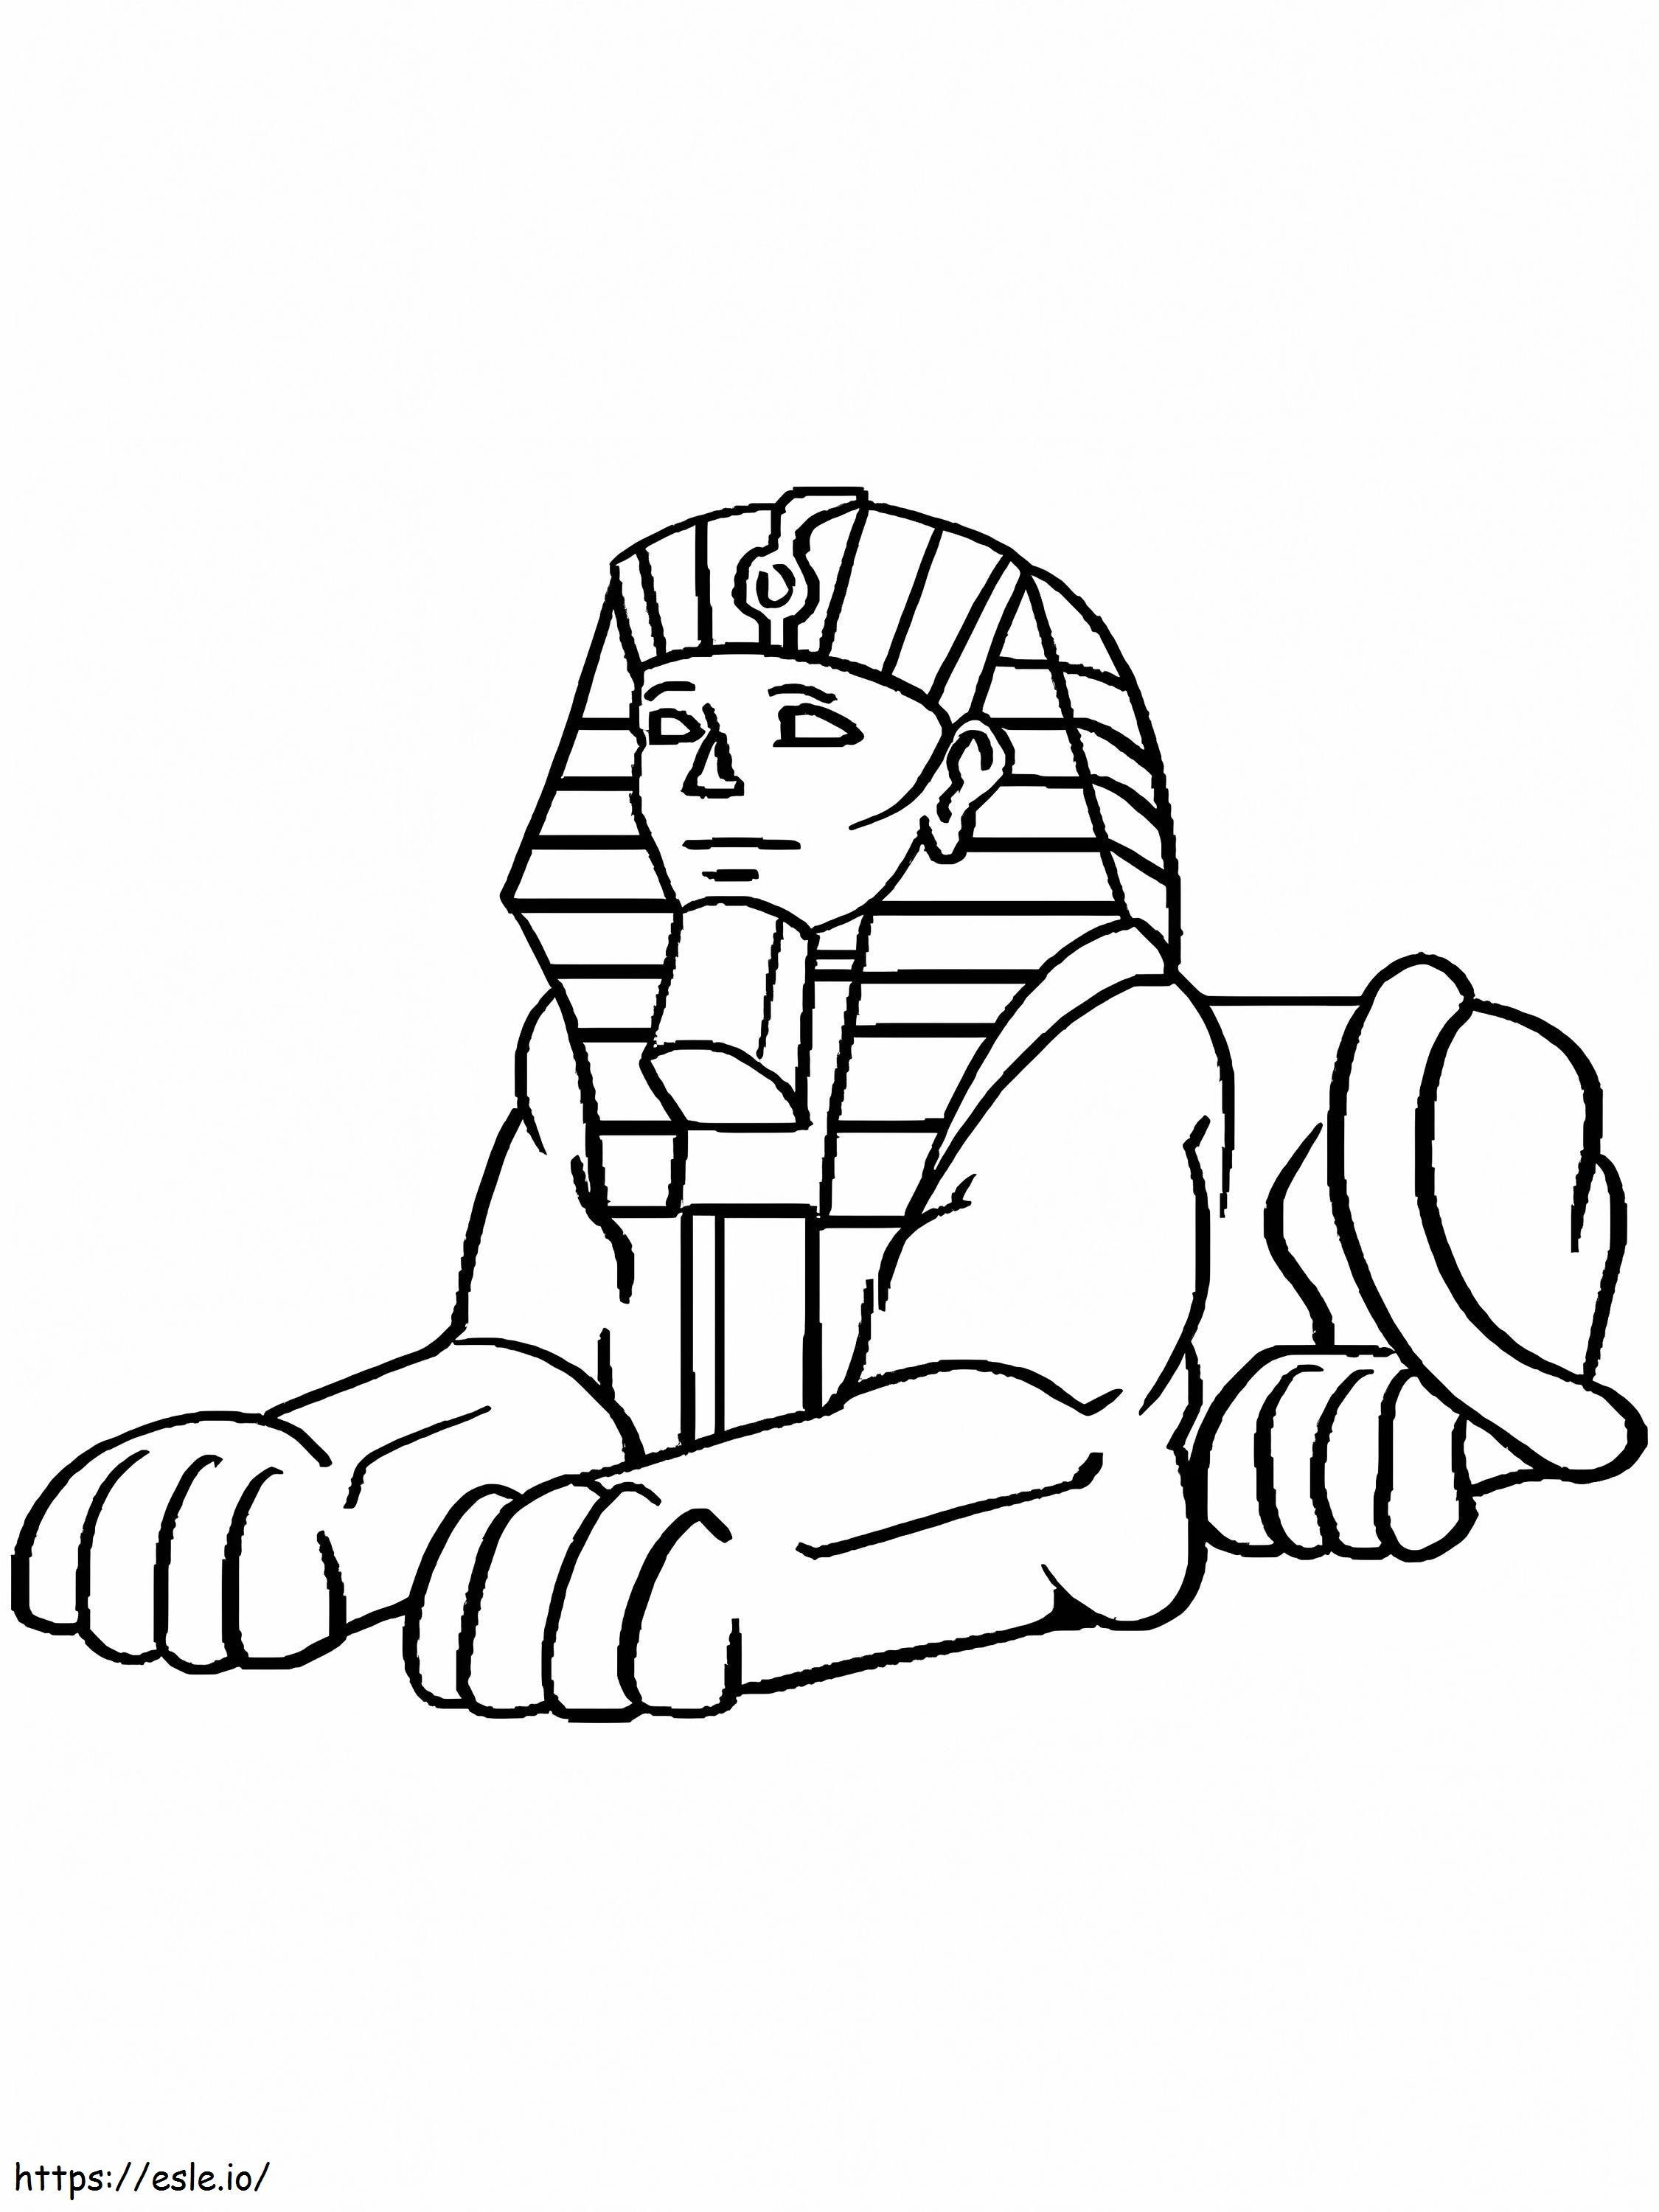 Kostenlose druckbare Sphinx ausmalbilder